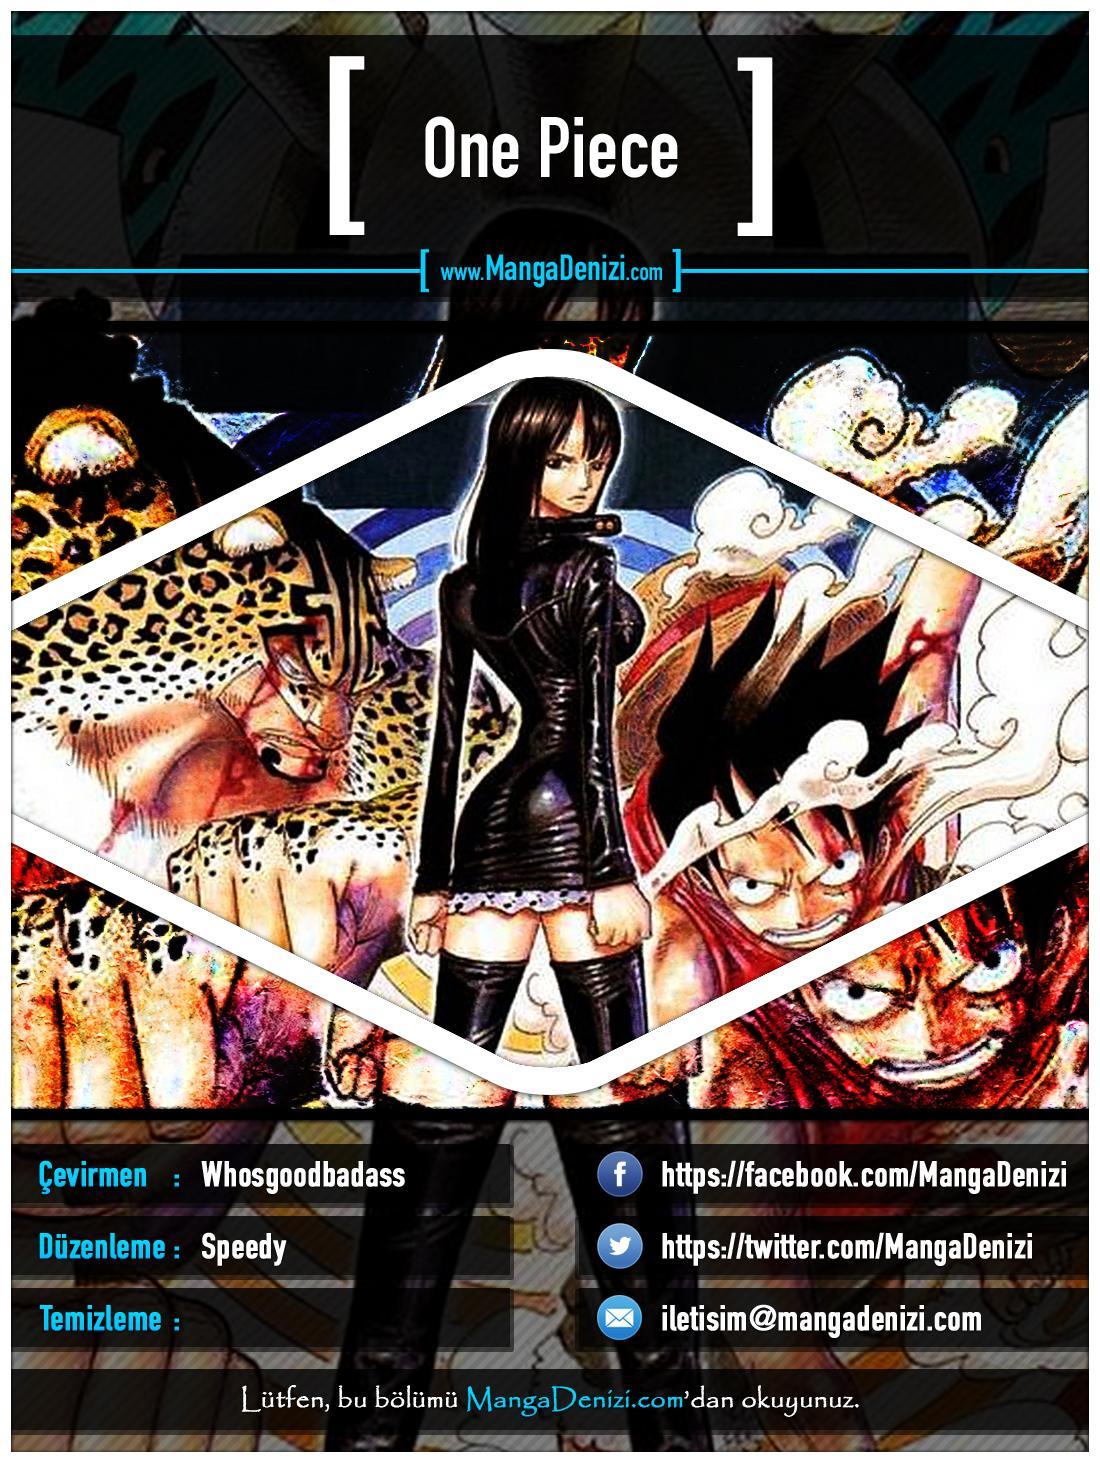 One Piece [Renkli] mangasının 0375 bölümünün 1. sayfasını okuyorsunuz.